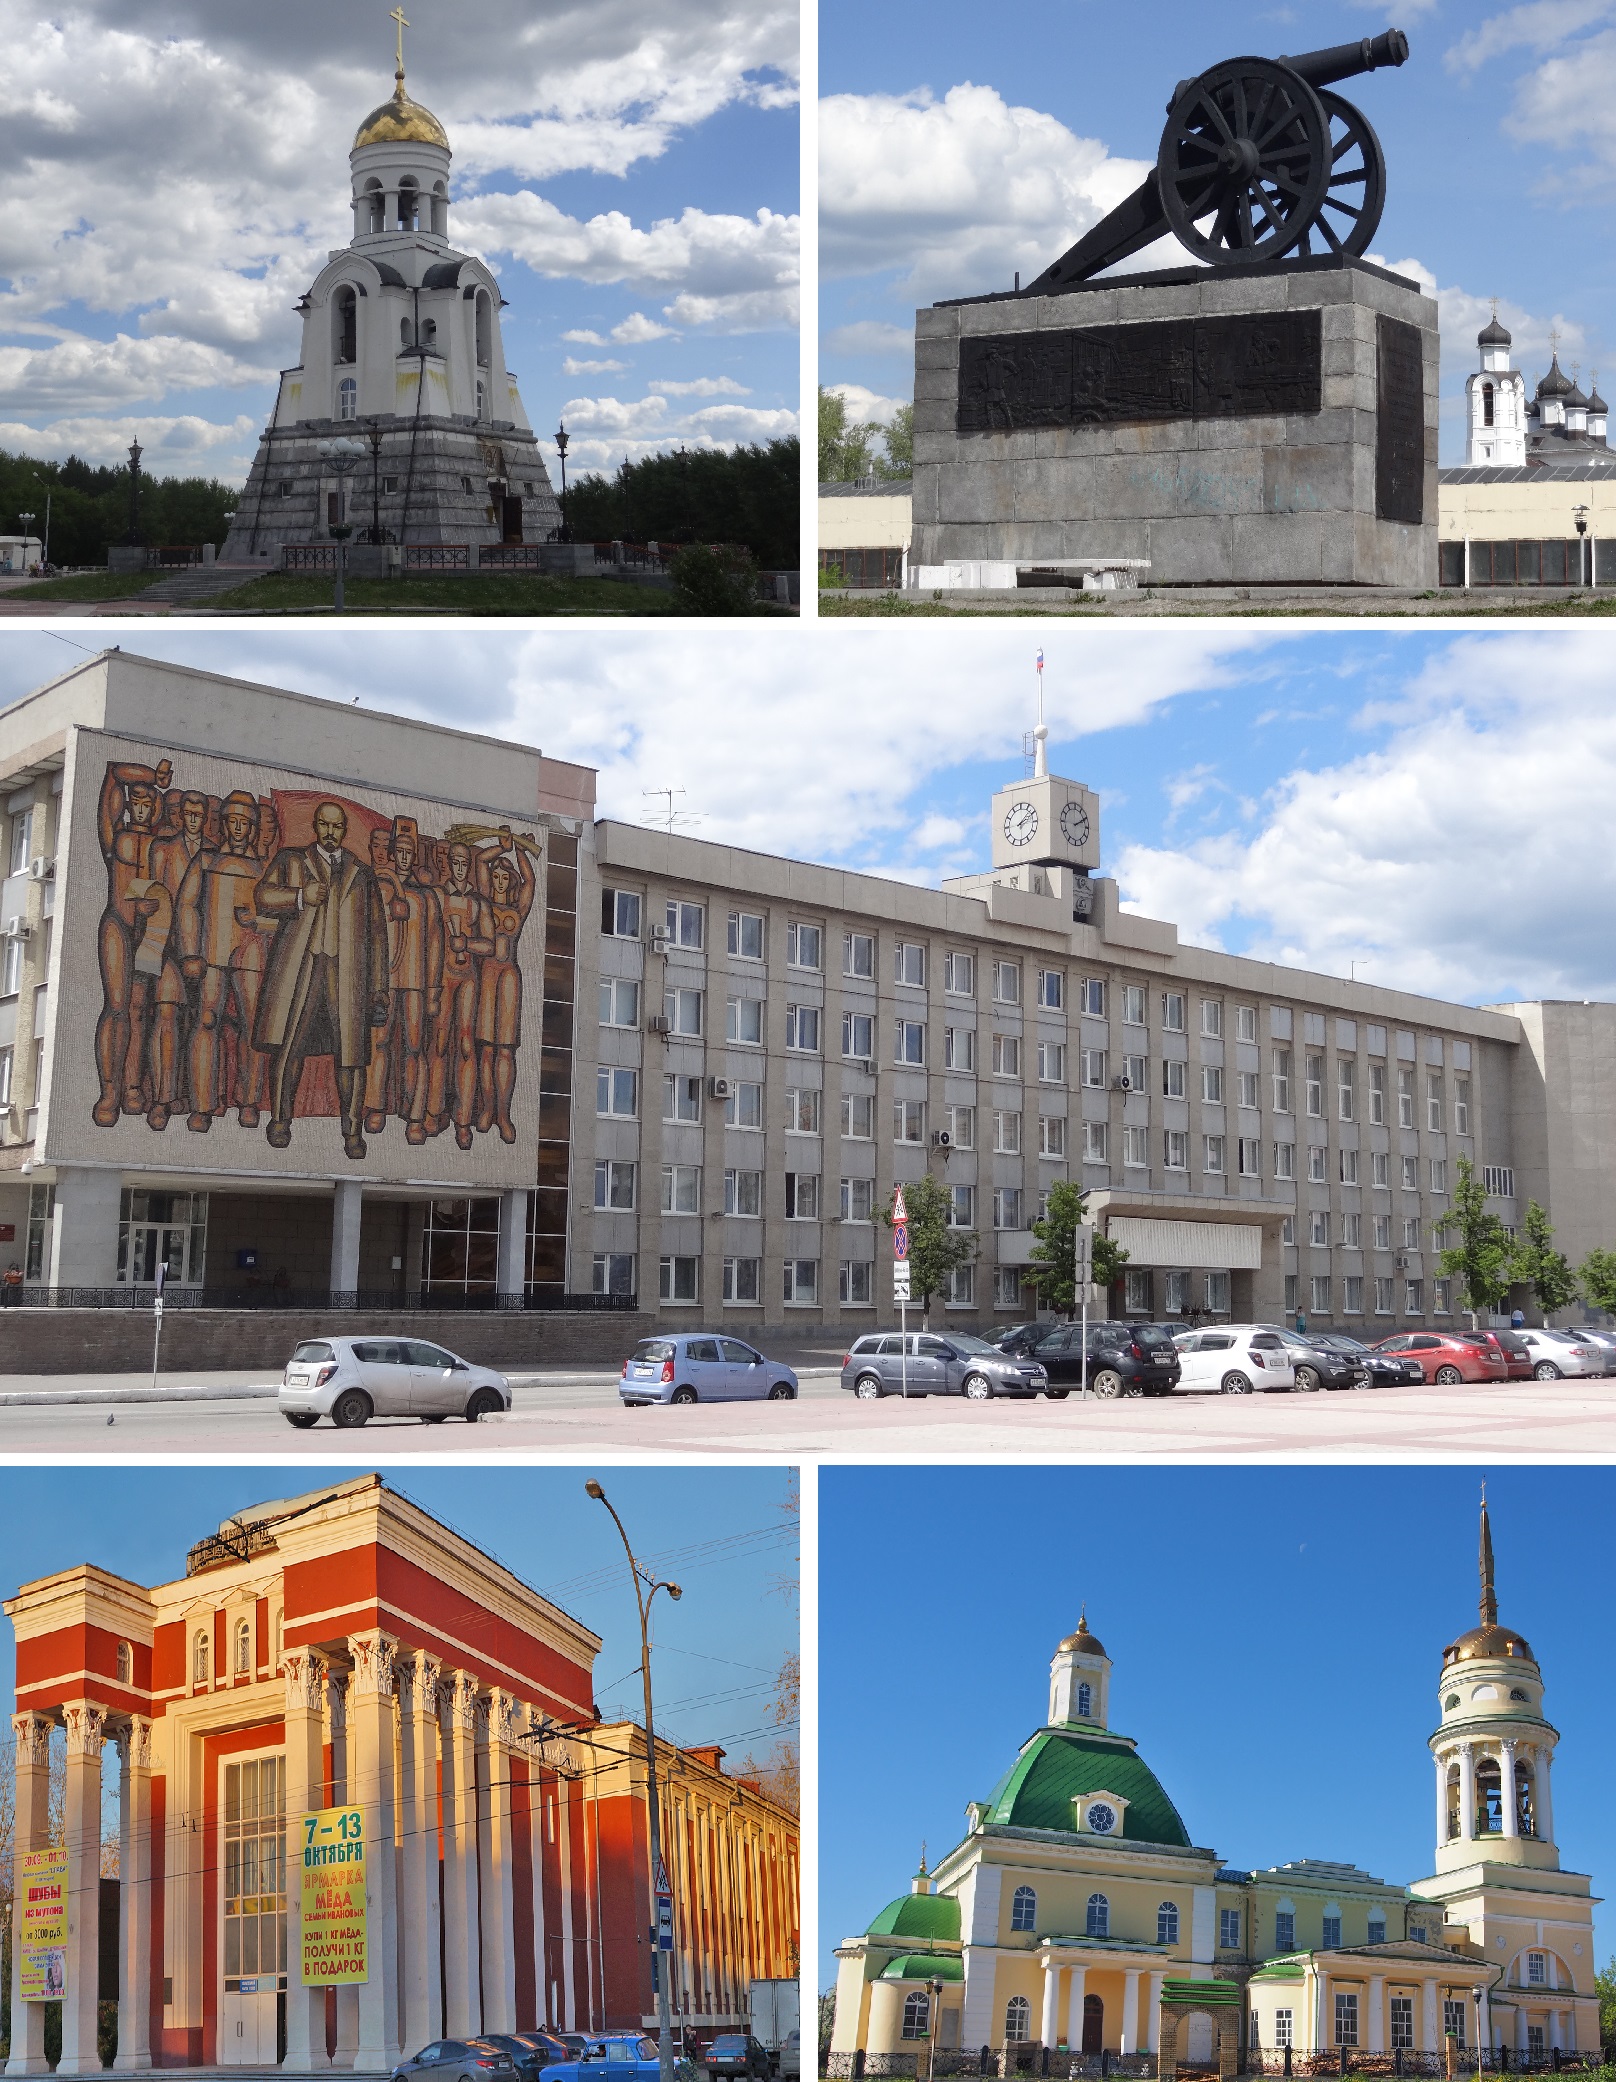 Kamensk Uralsky photo collage